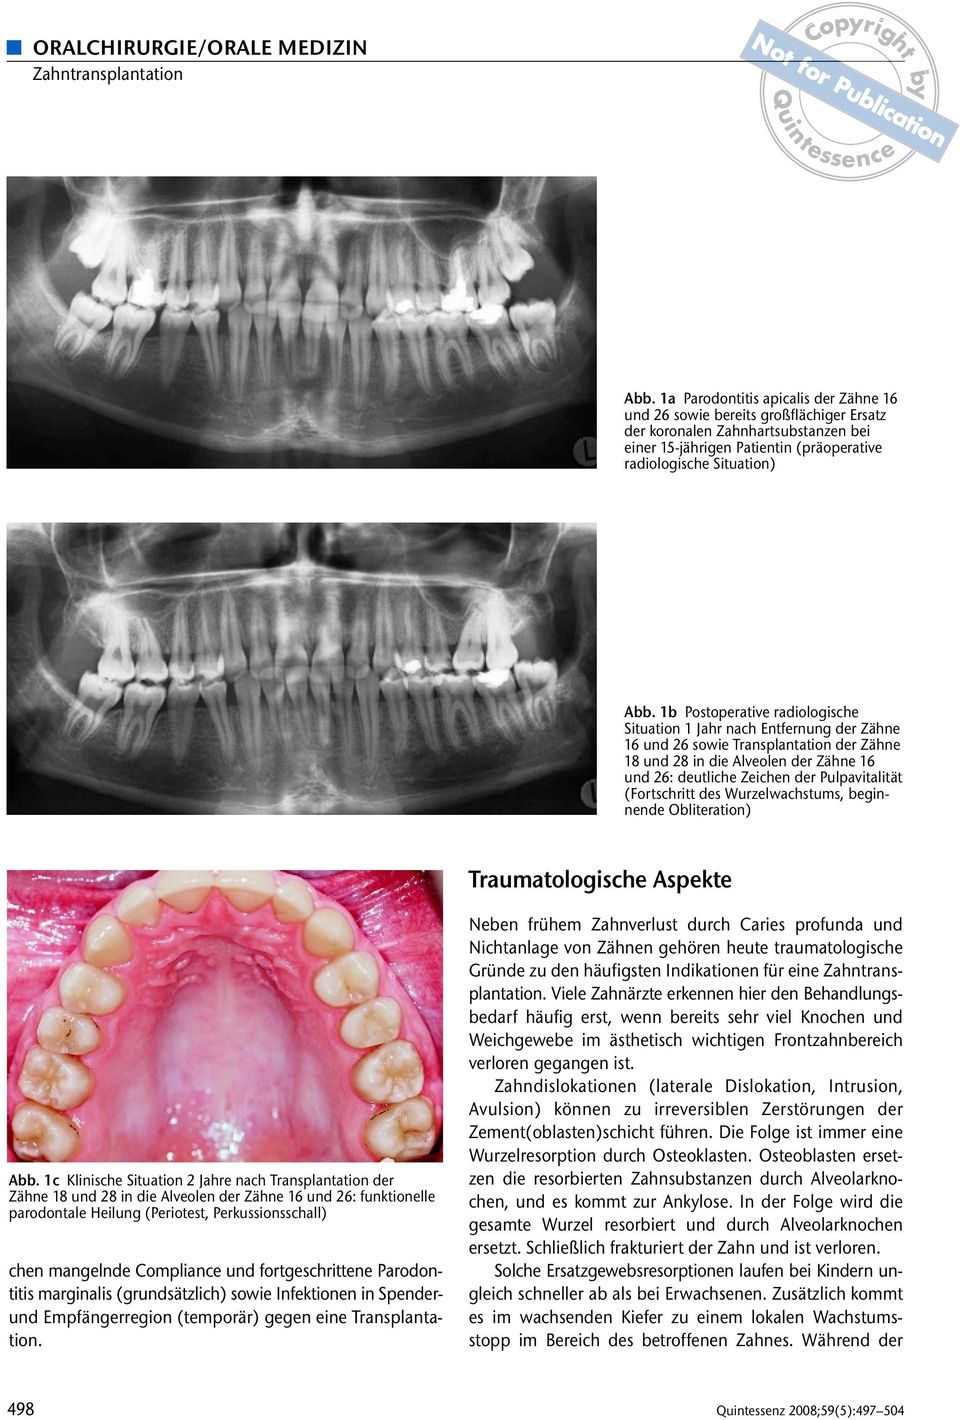 1b Postoperative radiologische Situation 1 Jahr nach Entfernung der Zähne 16 und 26 sowie Transplantation der Zähne 18 und 28 in die Alveolen der Zähne 16 und 26: deutliche Zeichen der Pulpavitalität